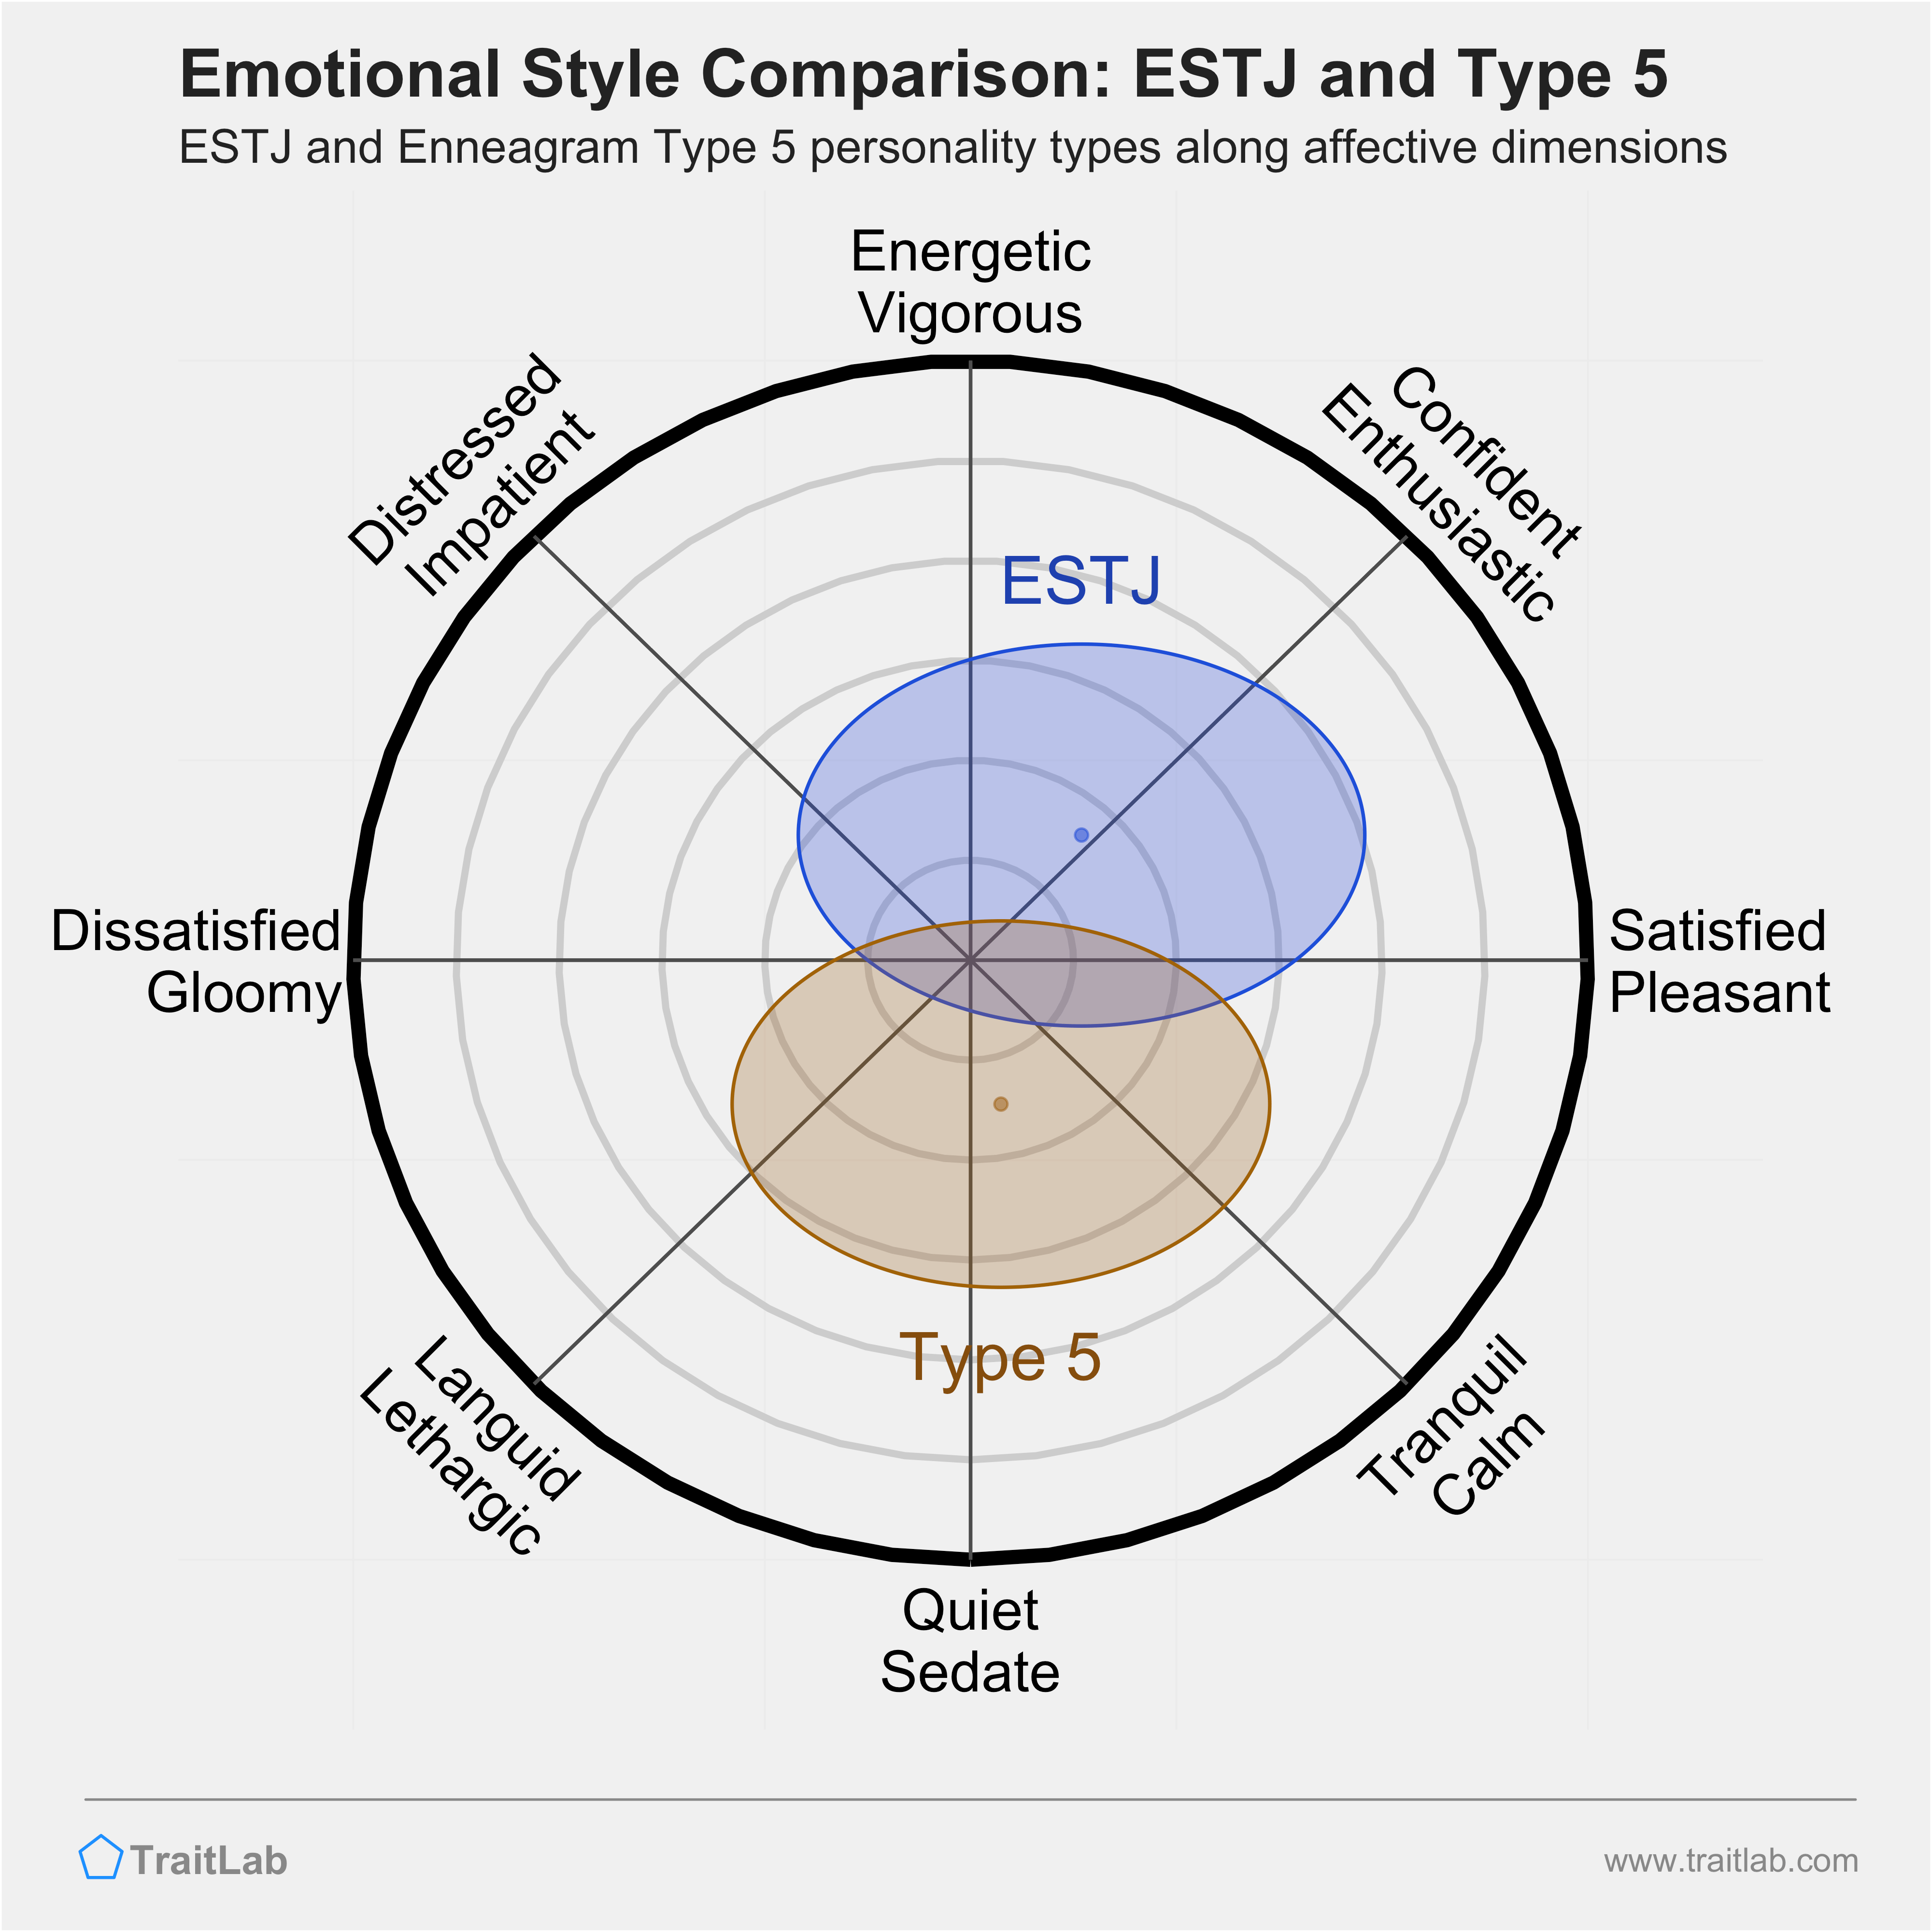 ESTJ and Type 5 comparison across emotional (affective) dimensions